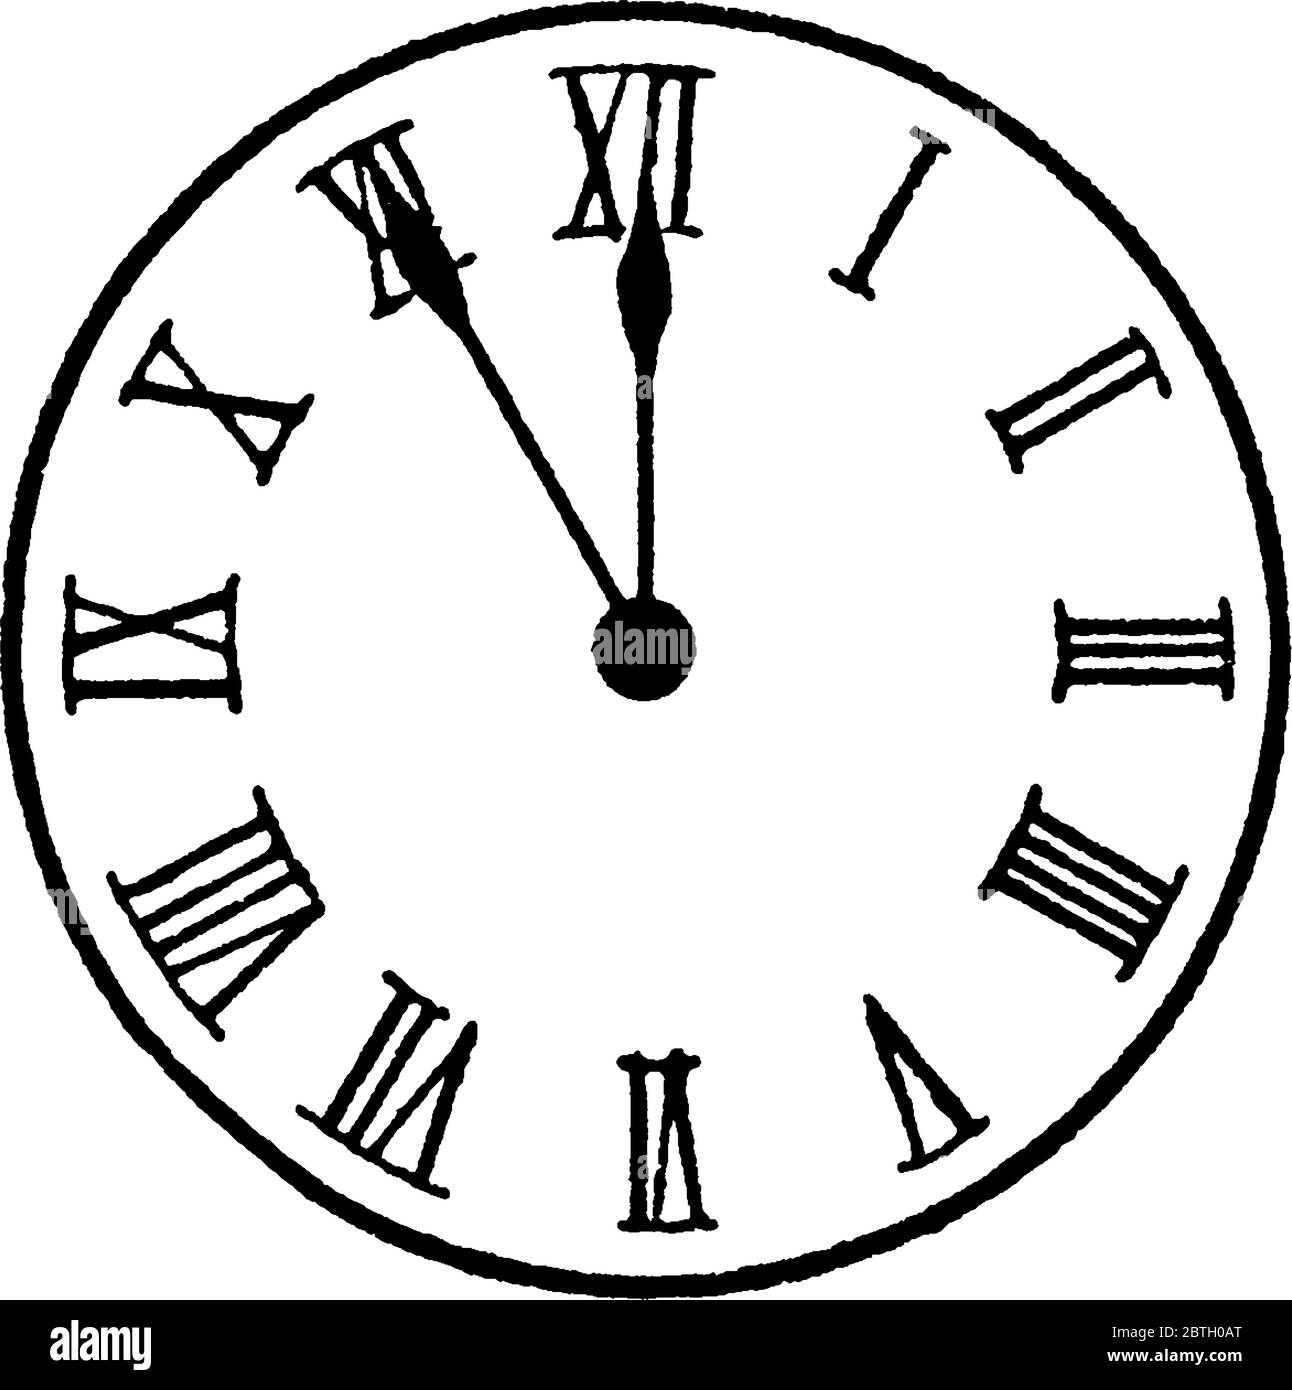 Часы нарисованный циферблат. Изображение часов. Циферблат часов. Циферблат со стрелками. Круглый циферблат часов.